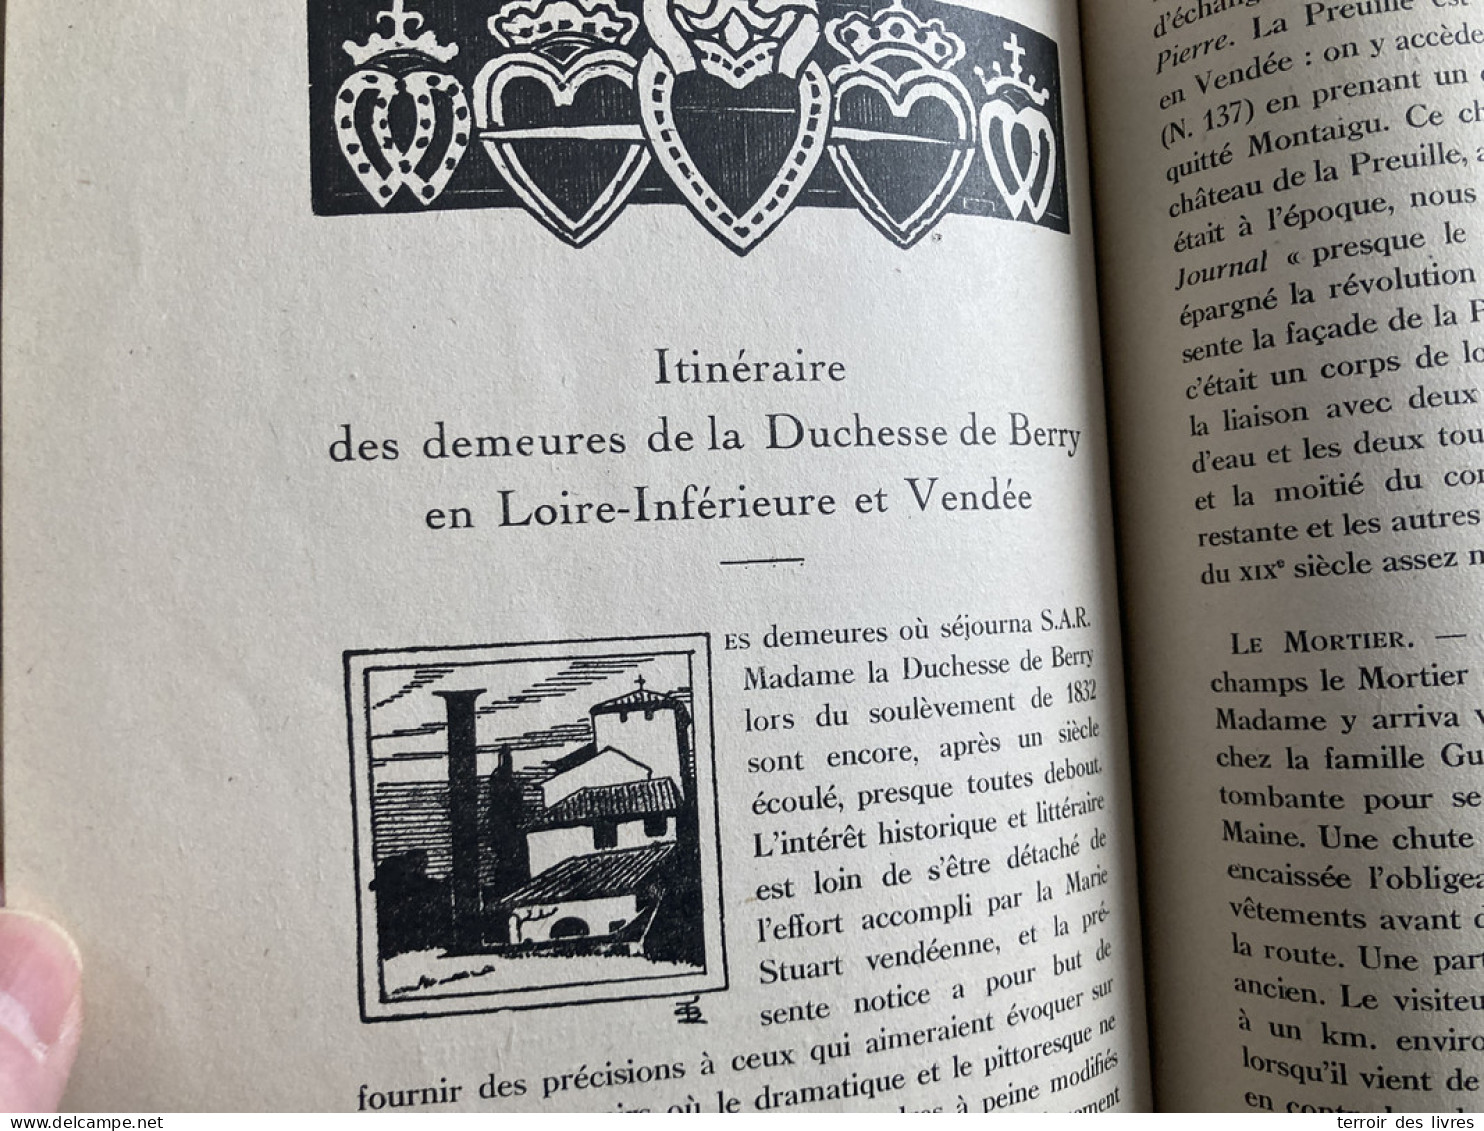 Revue Du Bas-Poitou 1946 4 LANDERONDE SAINT HILAIRE DE LOULAY MONTBERT SAINT PHILIBERT DE GRAND LIEU SAINT ETIENNE DE CO - Poitou-Charentes